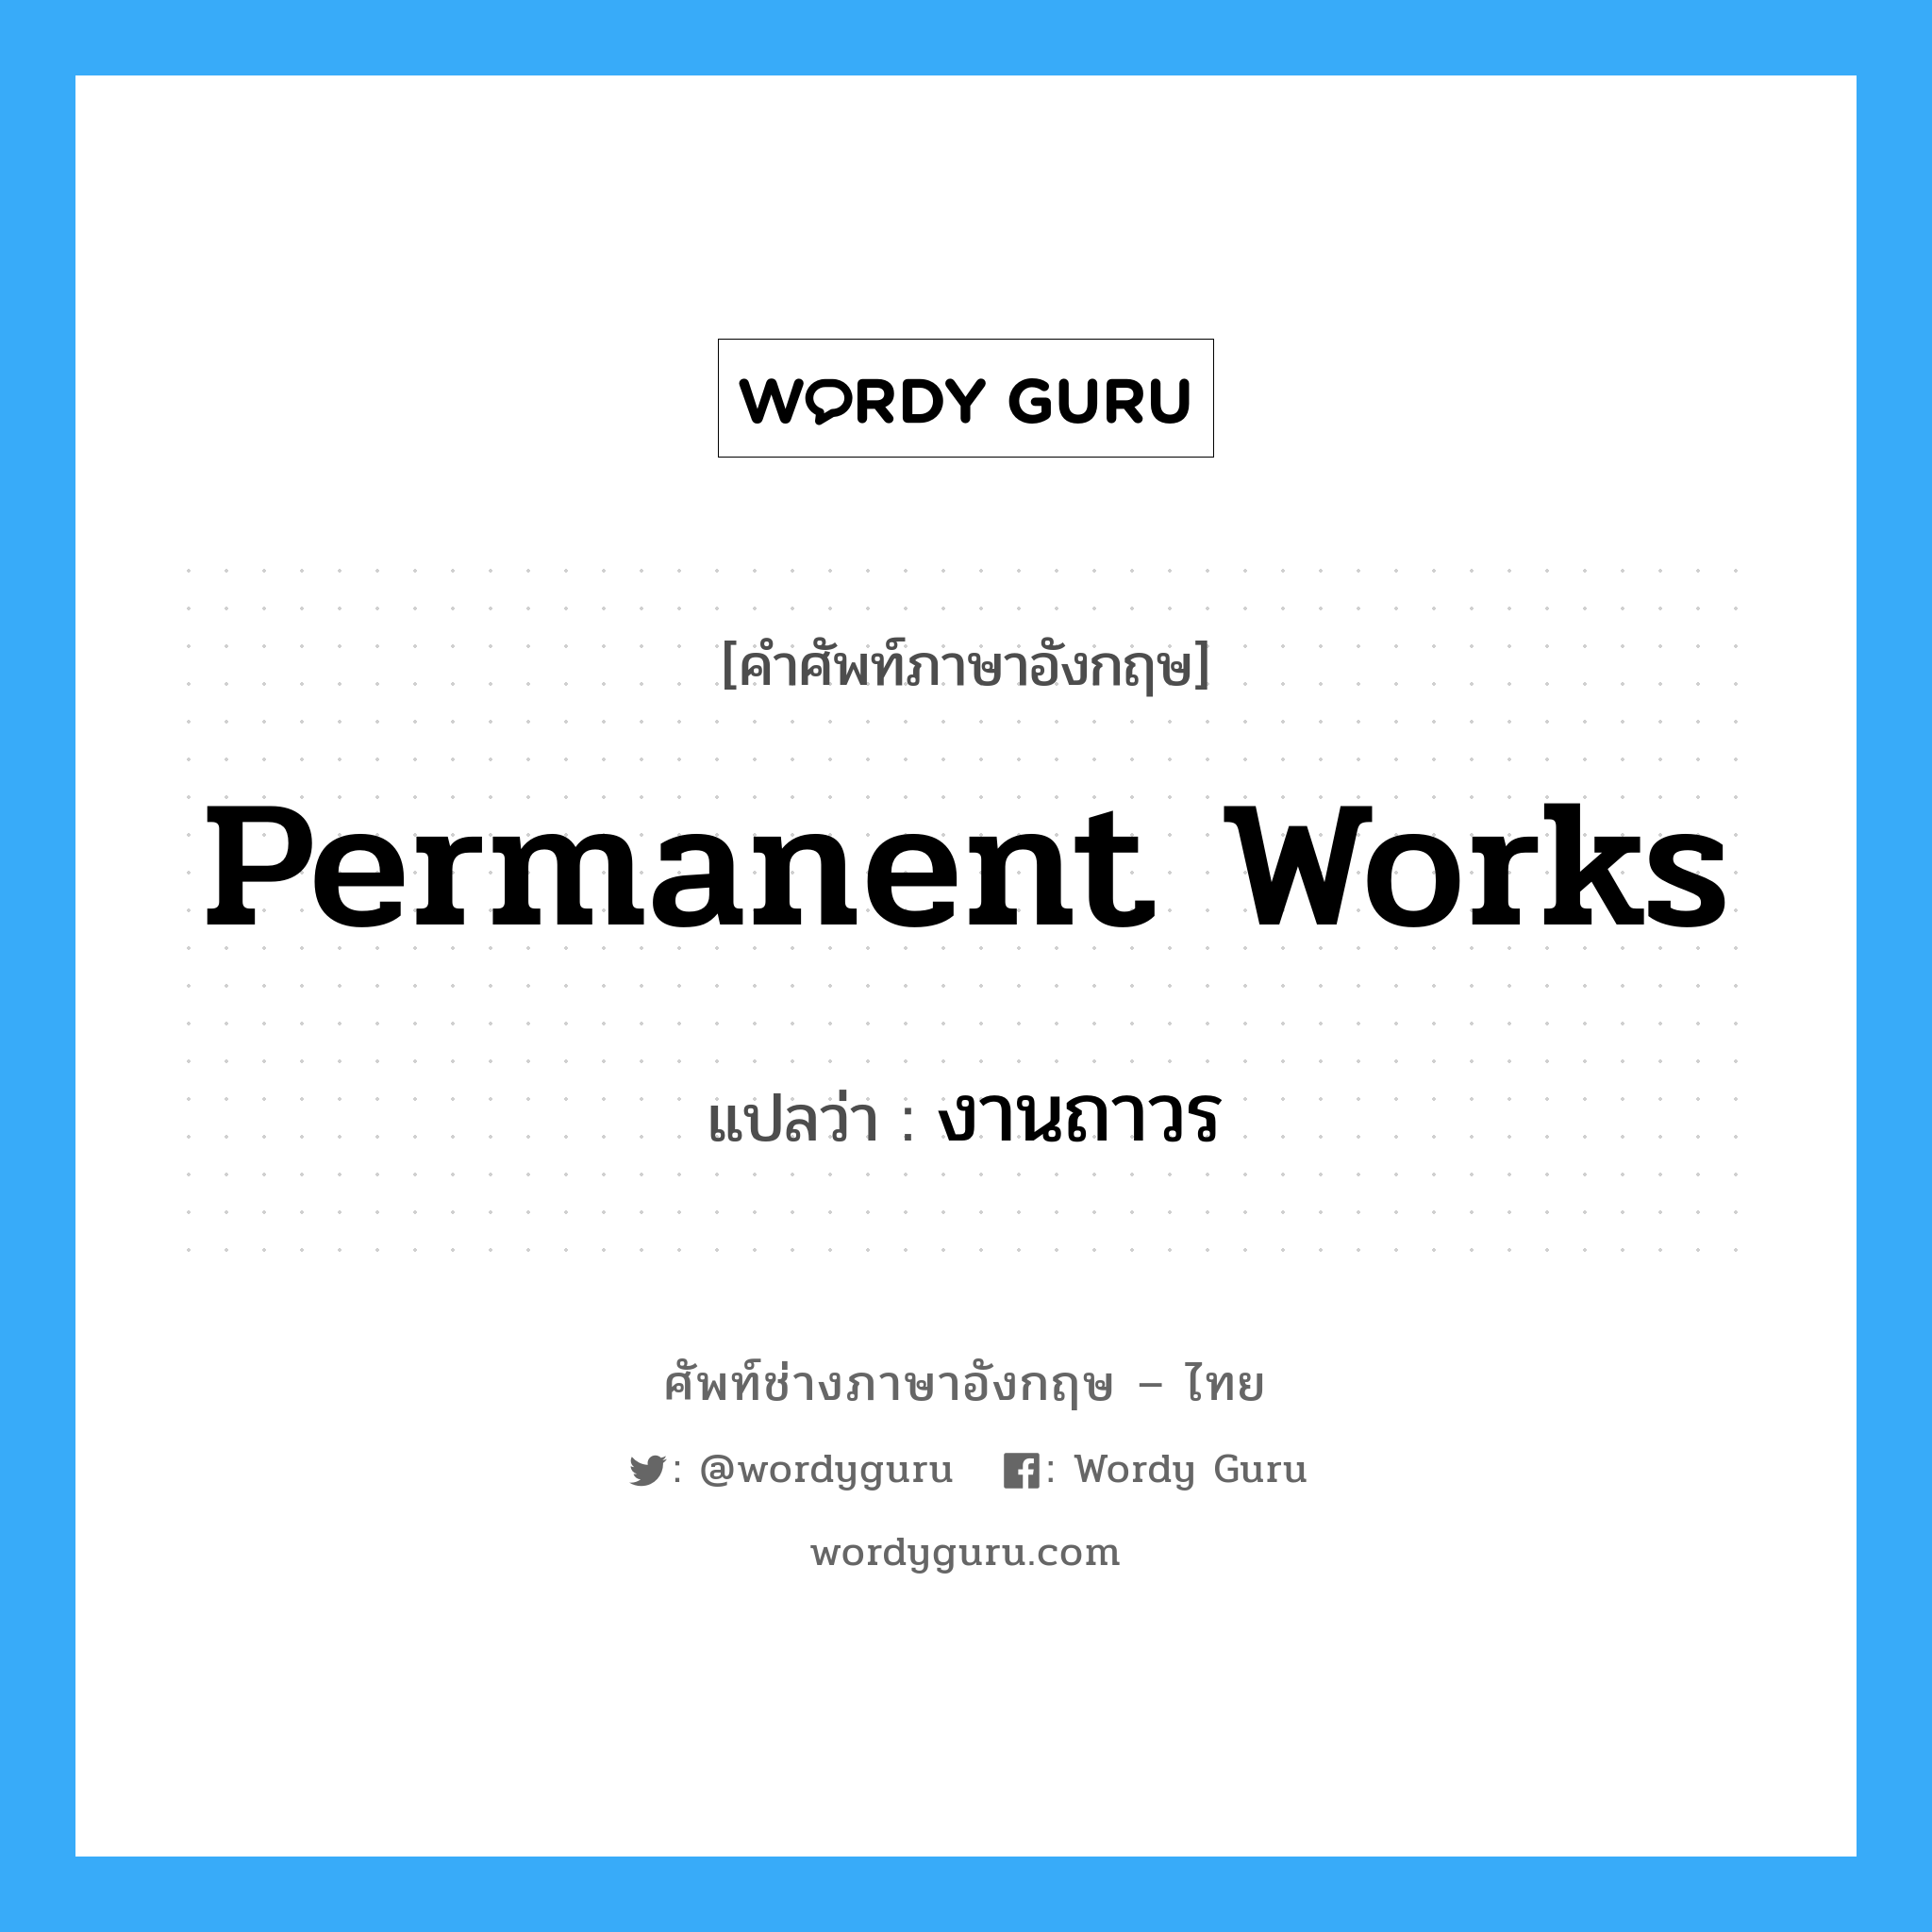 งานถาวร ภาษาอังกฤษ?, คำศัพท์ช่างภาษาอังกฤษ - ไทย งานถาวร คำศัพท์ภาษาอังกฤษ งานถาวร แปลว่า Permanent Works